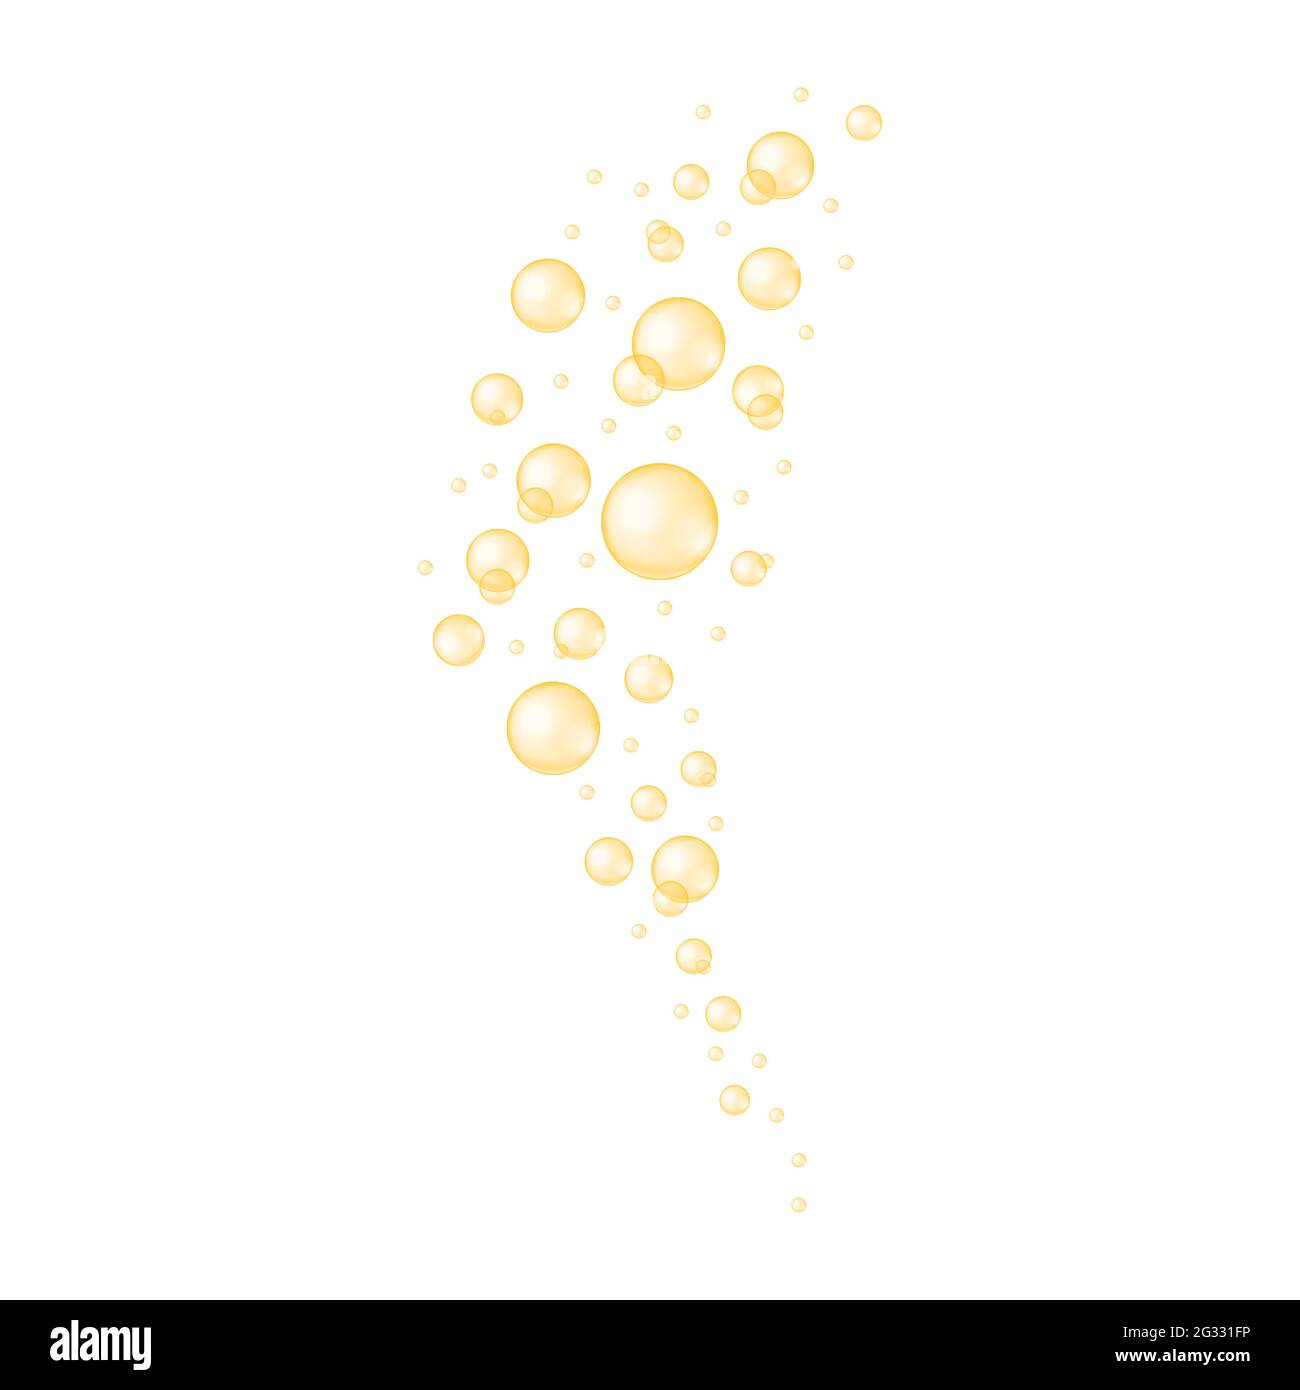 Goldblasen strömen. Kohlensäurehaltige Textur von Getränken. Glänzende Kugeln aus Kollagen, Serum, Jojoba-Kosmetiköl, Vitamin A oder E, Omega-Fettsäuren. Vektor-realistische Darstellung. Stock Vektor